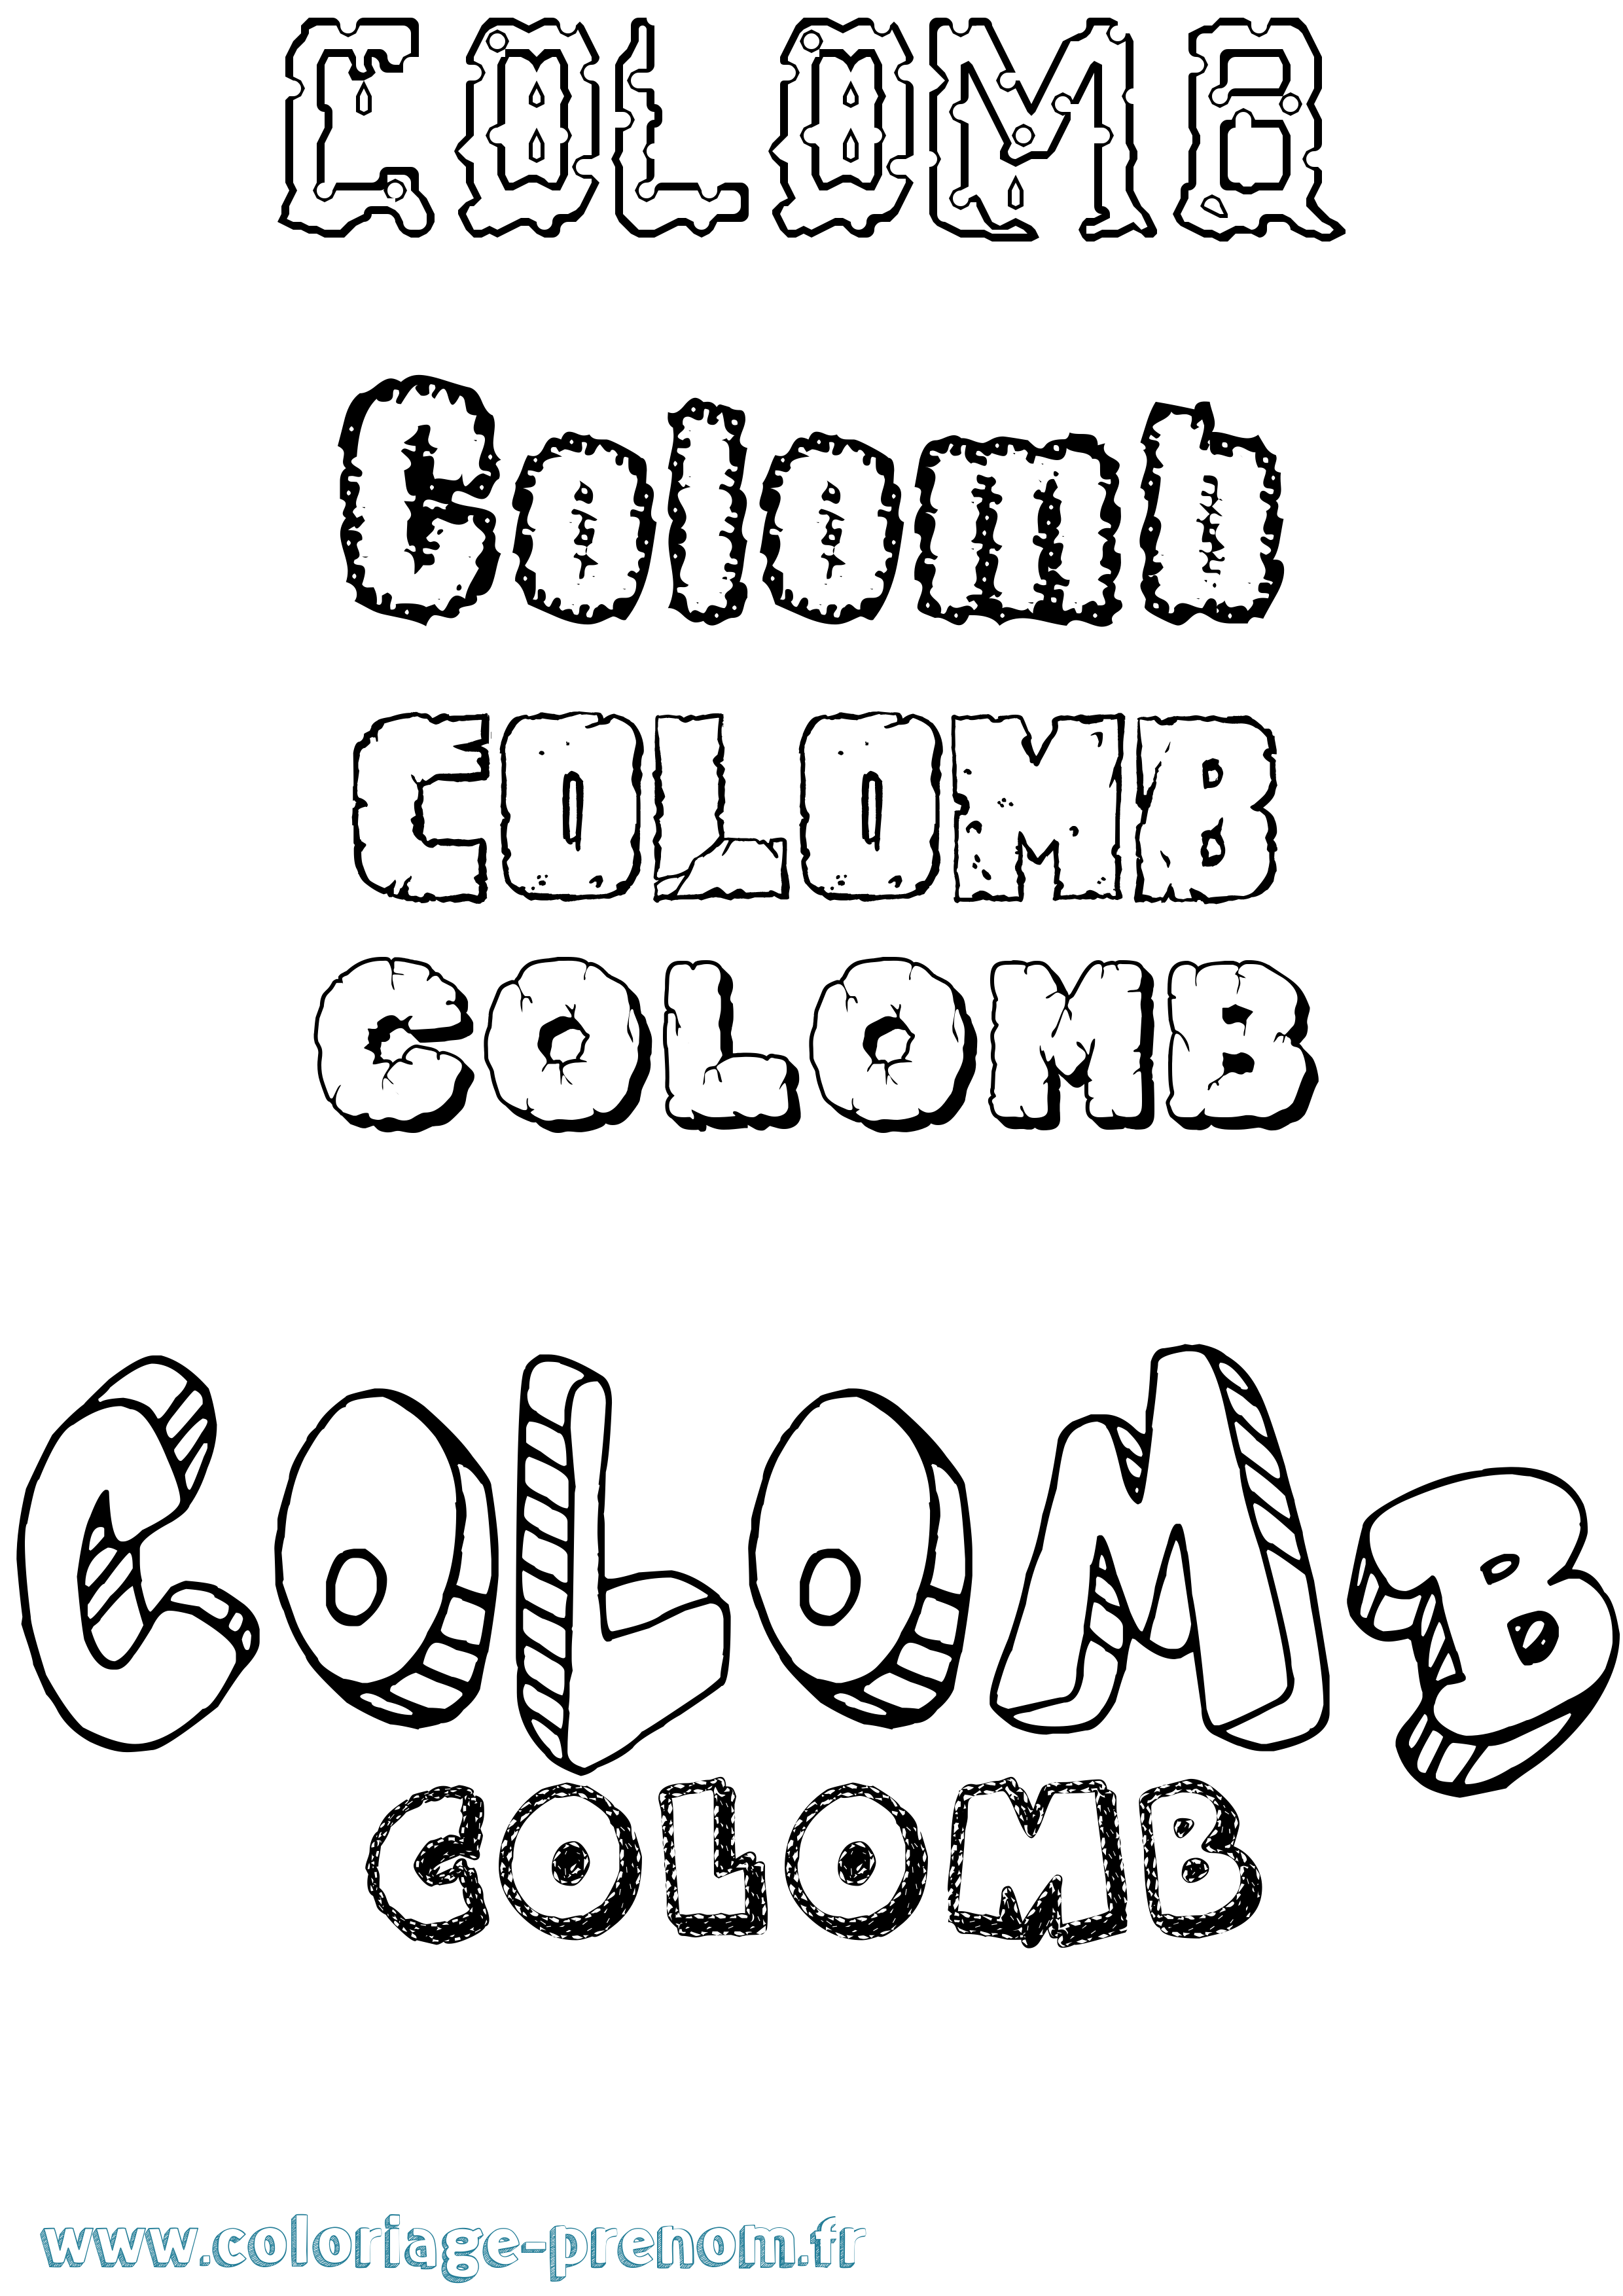 Coloriage prénom Colomb Destructuré